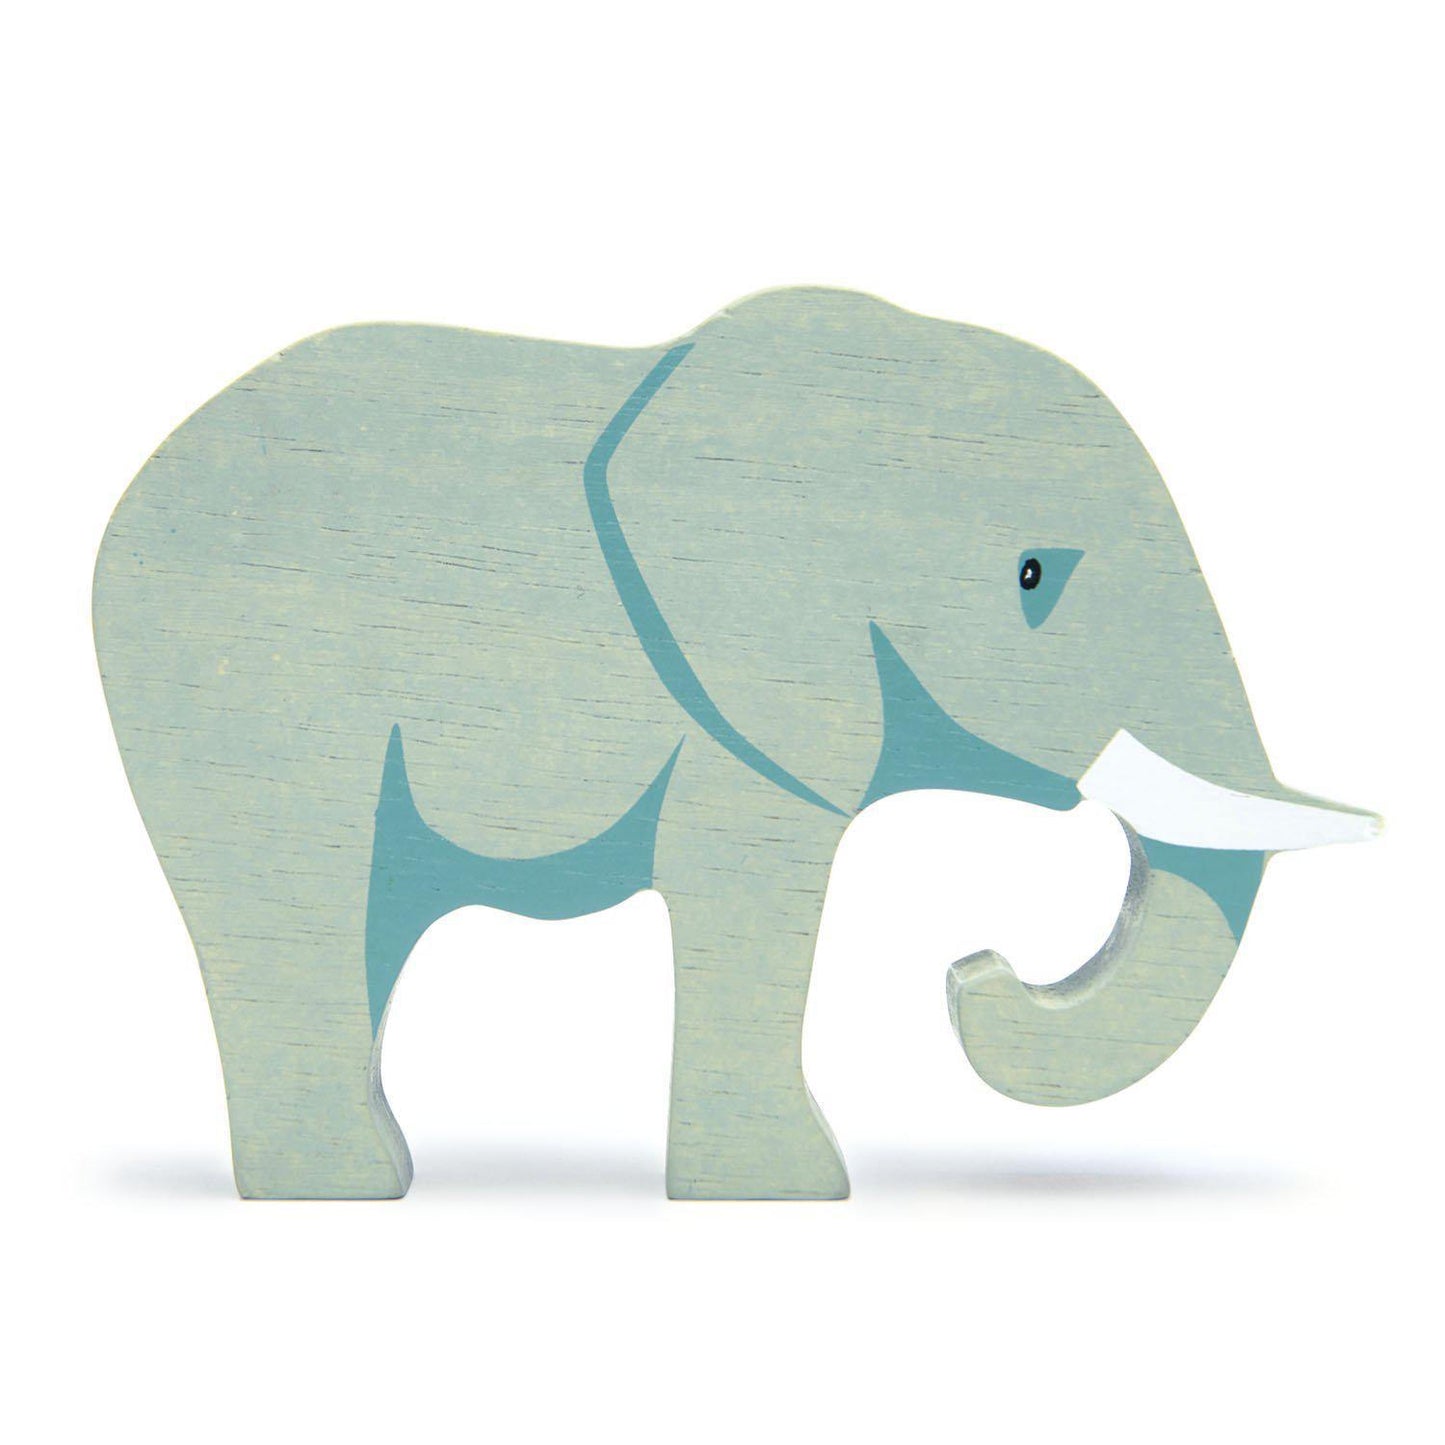 Elefánt, prémium minőségű fából - Elephant - Tender Leaf Toys-Tender Leaf Toys-1-Játszma.ro - A maradandó élmények boltja